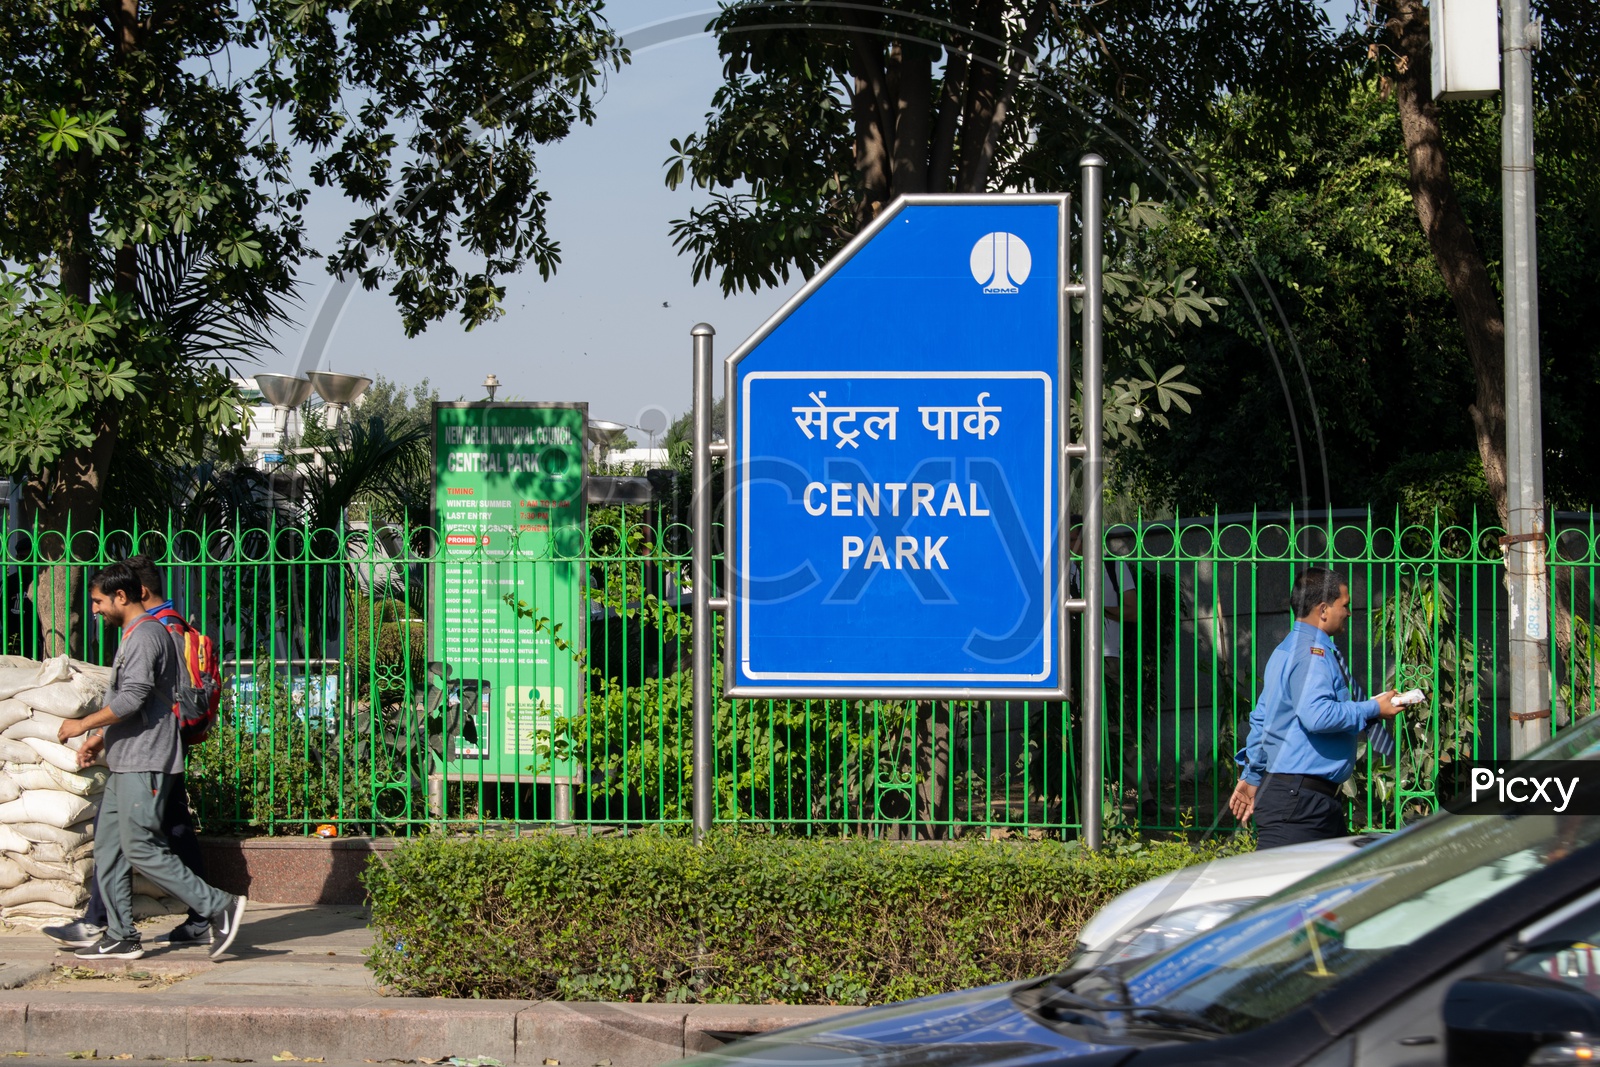 Name Board of Central Park Delhi